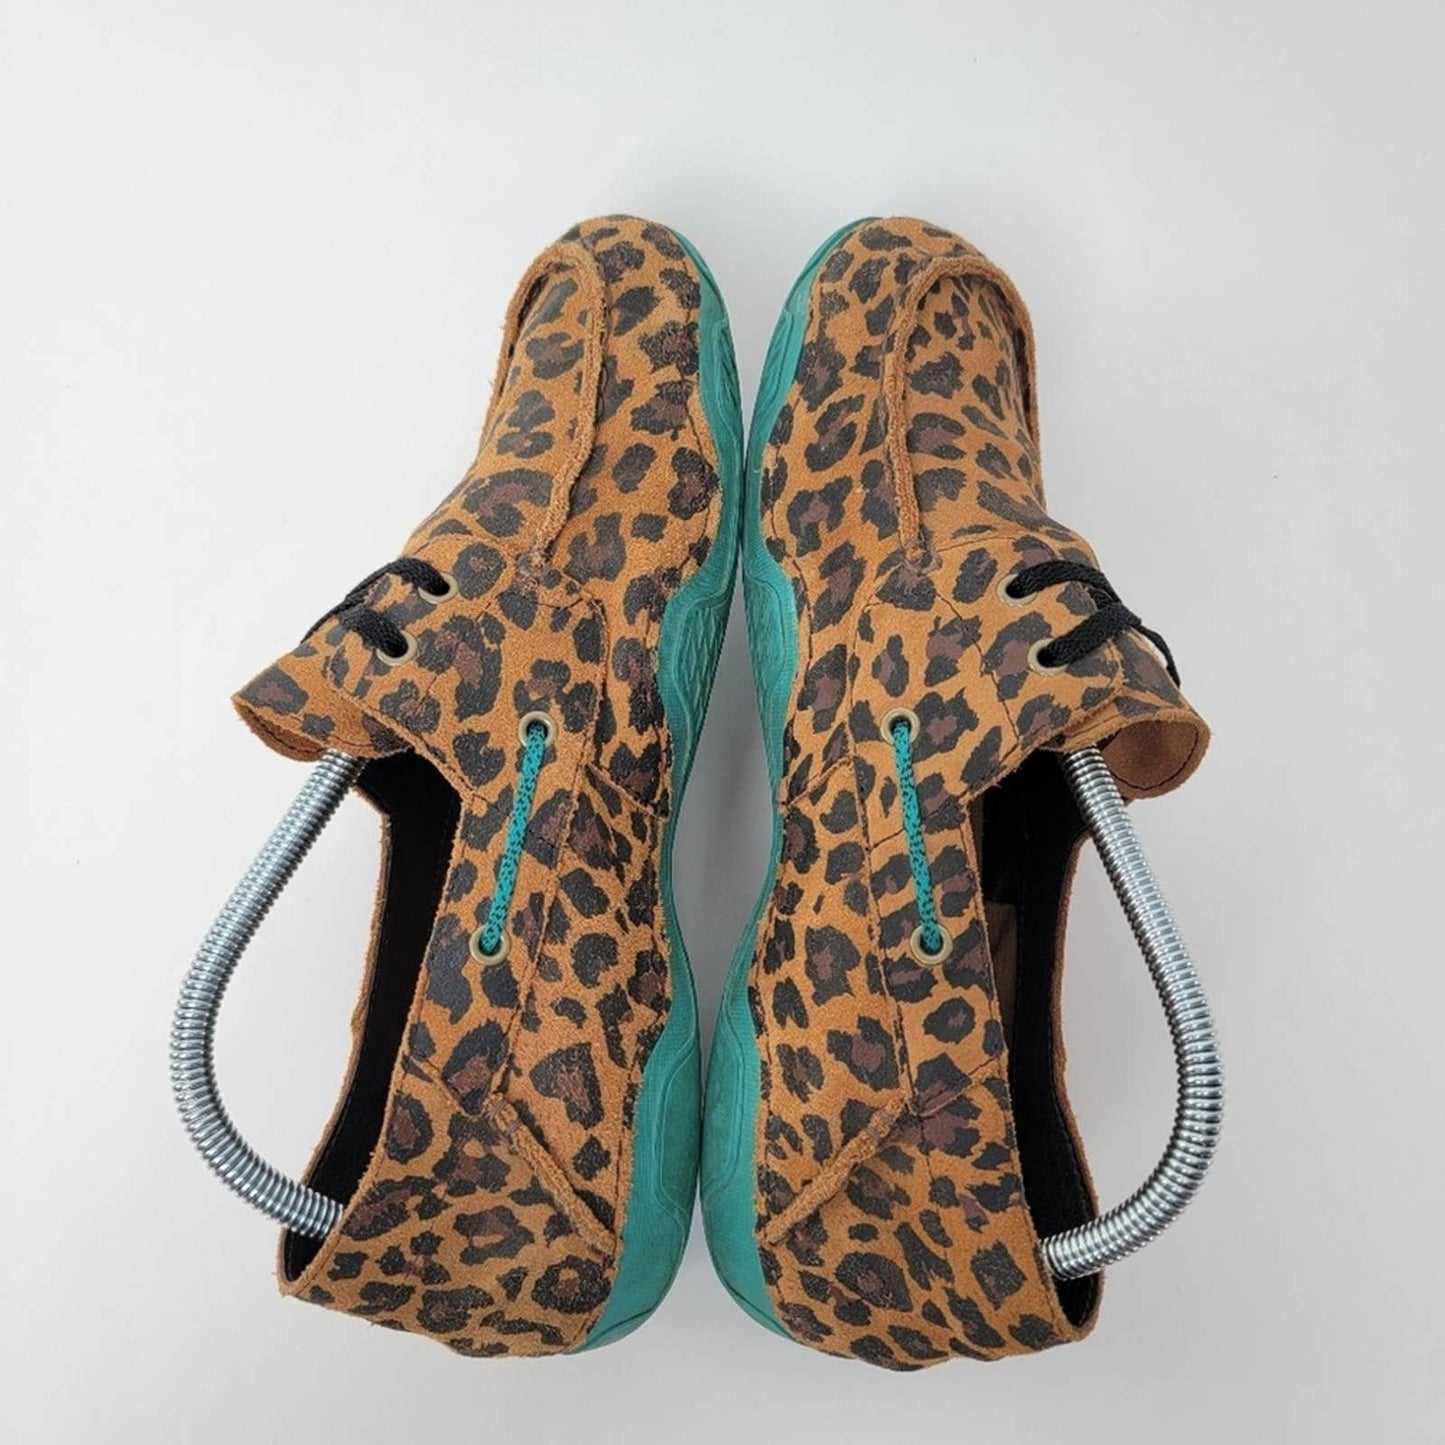 Ariat Caldwell Leopard / Cheetah Animal Print Shoes - 10